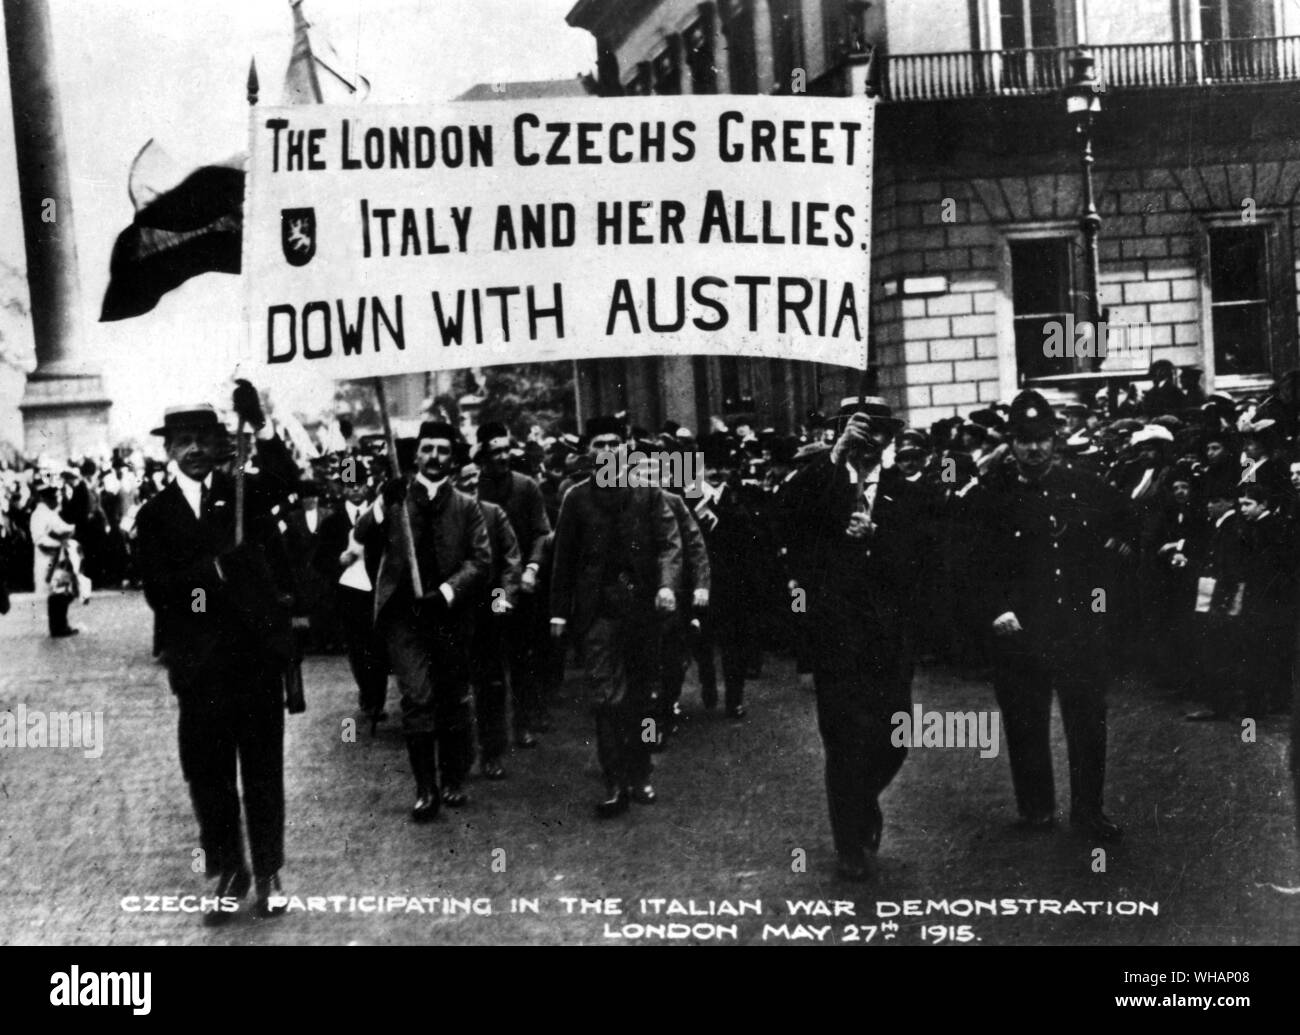 Una escena tomada durante una manifestación anti austríaco de los checos residentes en Londres el 27 de mayo de 1915. . El London checos saludar a Italia y sus aliados con Austria. Los checos participan en la demostración de la guerra italiana Foto de stock